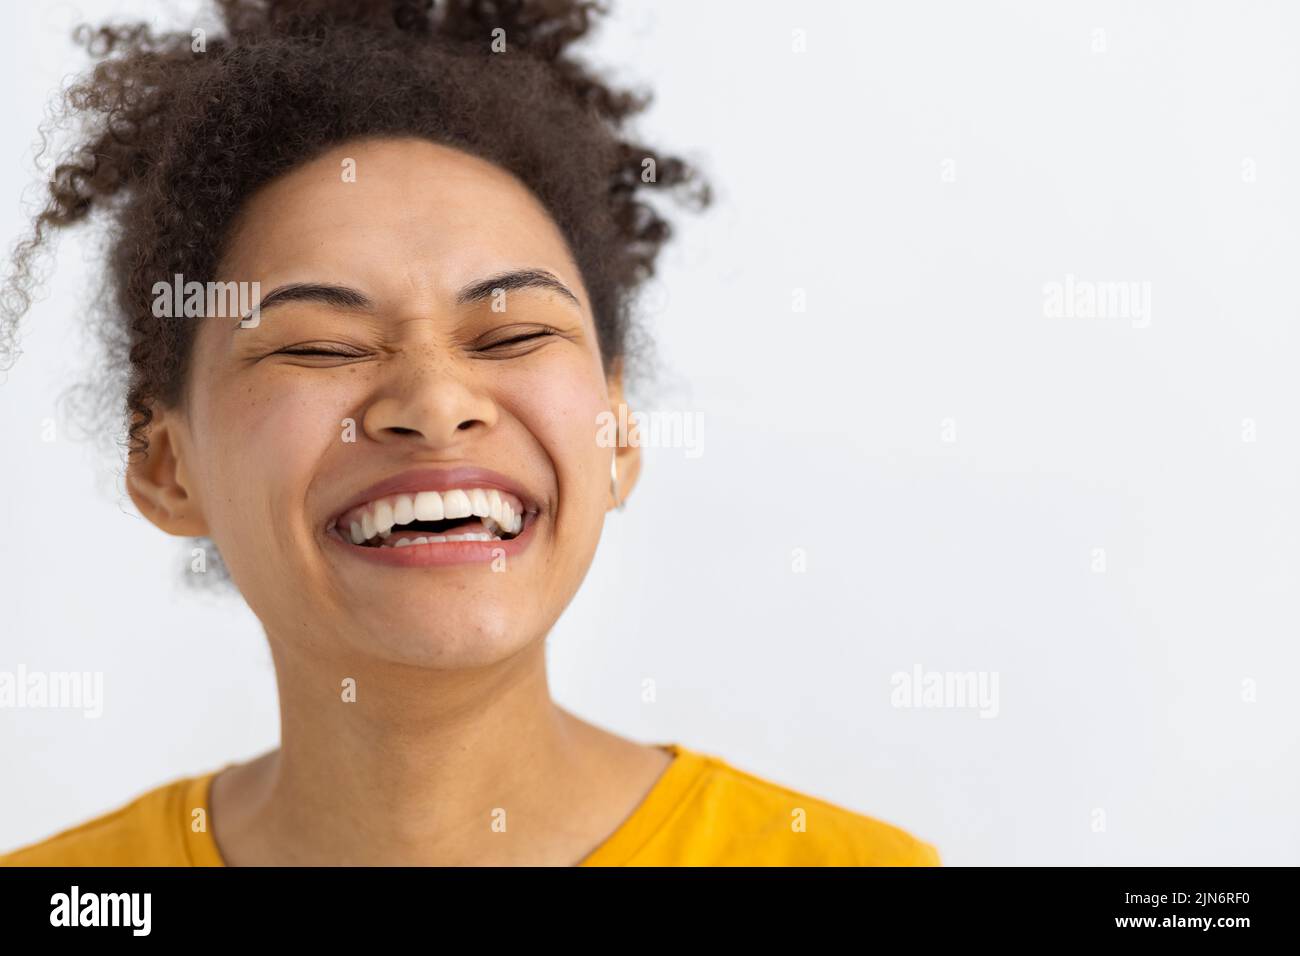 Junge glückliche positive Frau mit weißen Zähnen lächelt breit hält die Augen auf weißem Hintergrund geschlossen Stockfoto